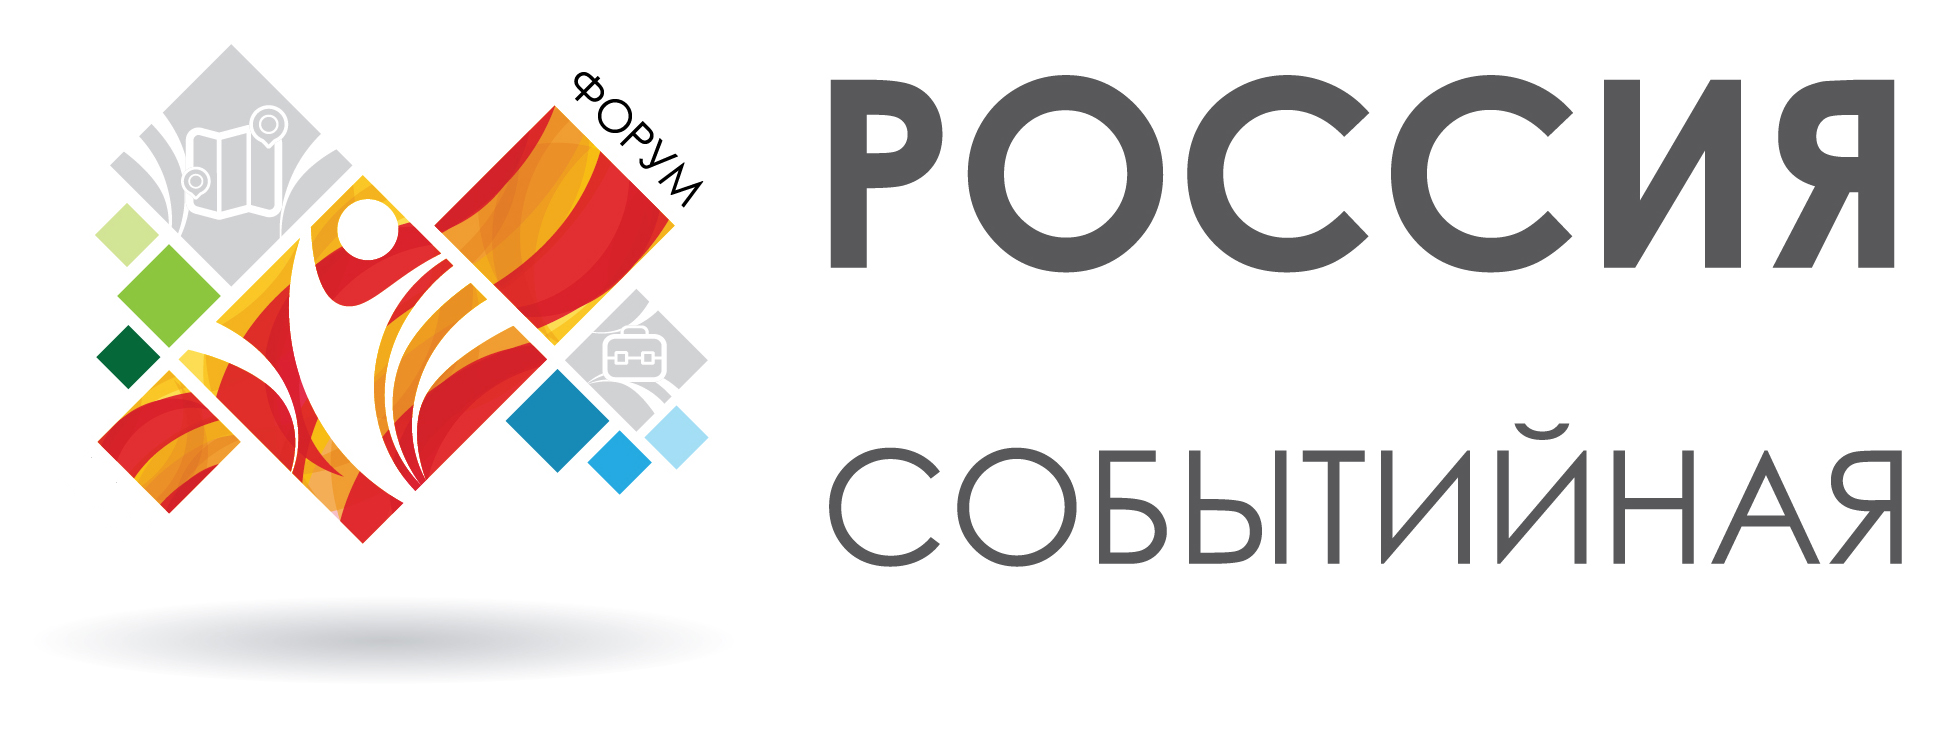 Второй Всероссийский Форум «Россия Событийная». 26-28 февраля 2017 года в городе Тольятти.